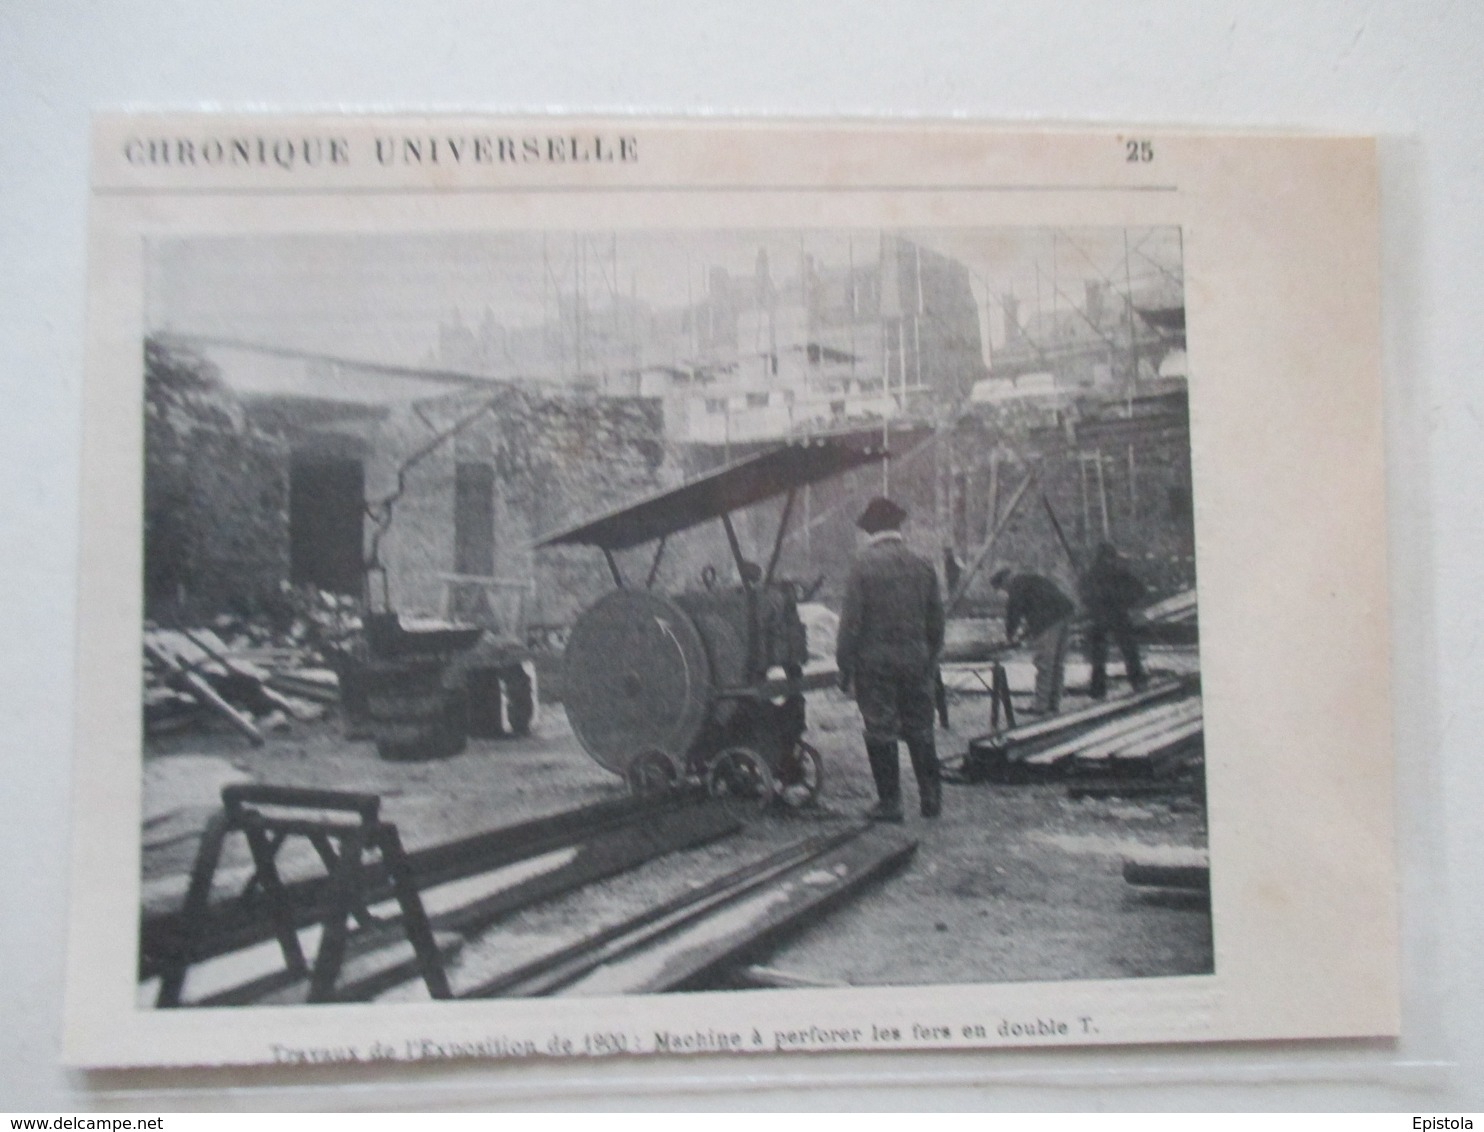 PARIS - Travaux Exposition Universelle De 1900 - Machine à Perforer Les Fers -  Coupure De Presse De 1898 - Andere Geräte